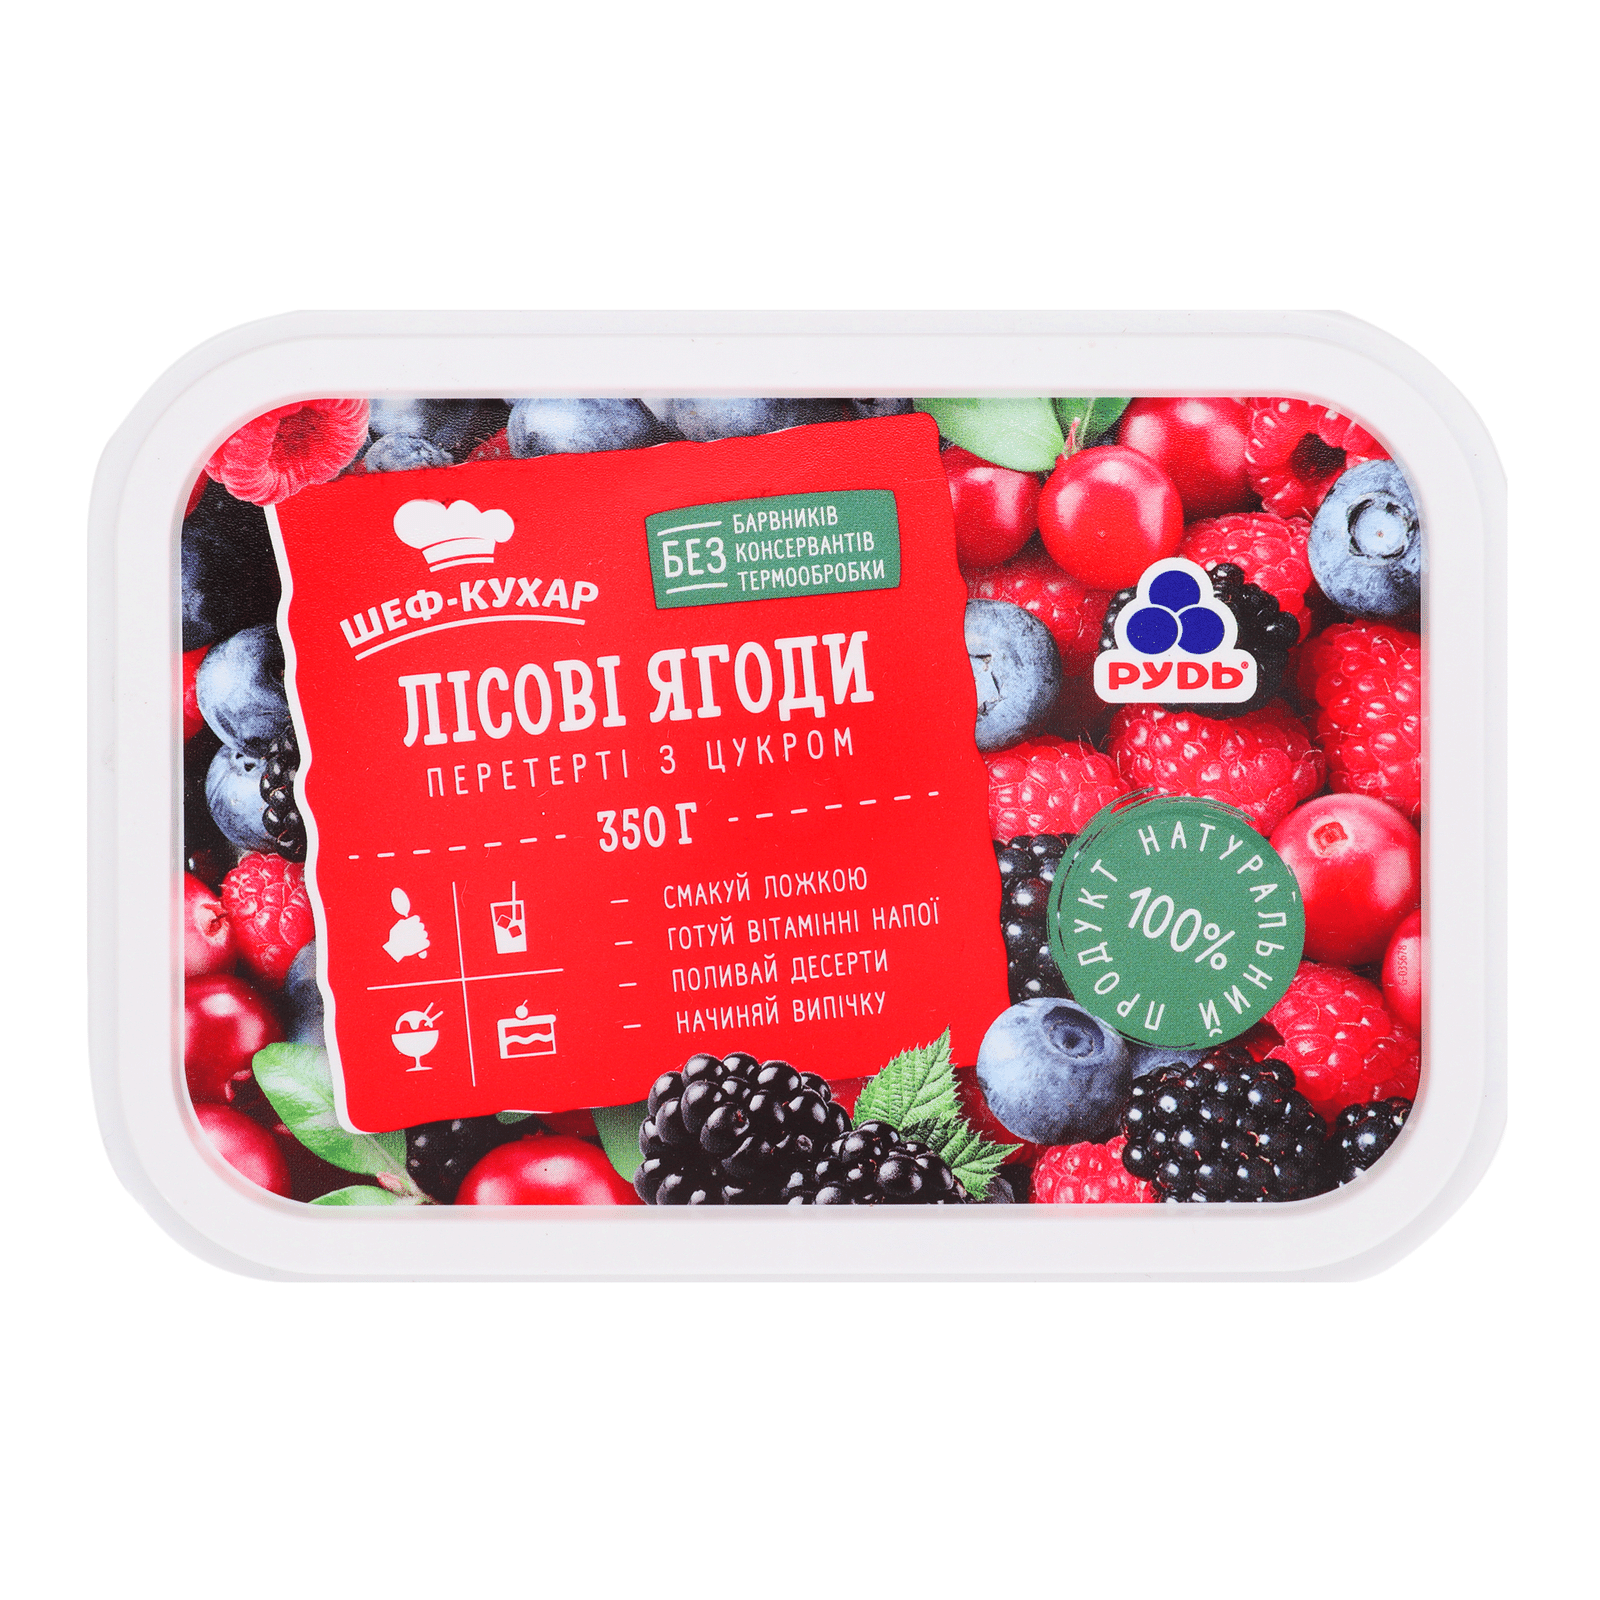 Лісові ягоди «Рудь» «Шеф-кухар» перетерті з цукром - 1